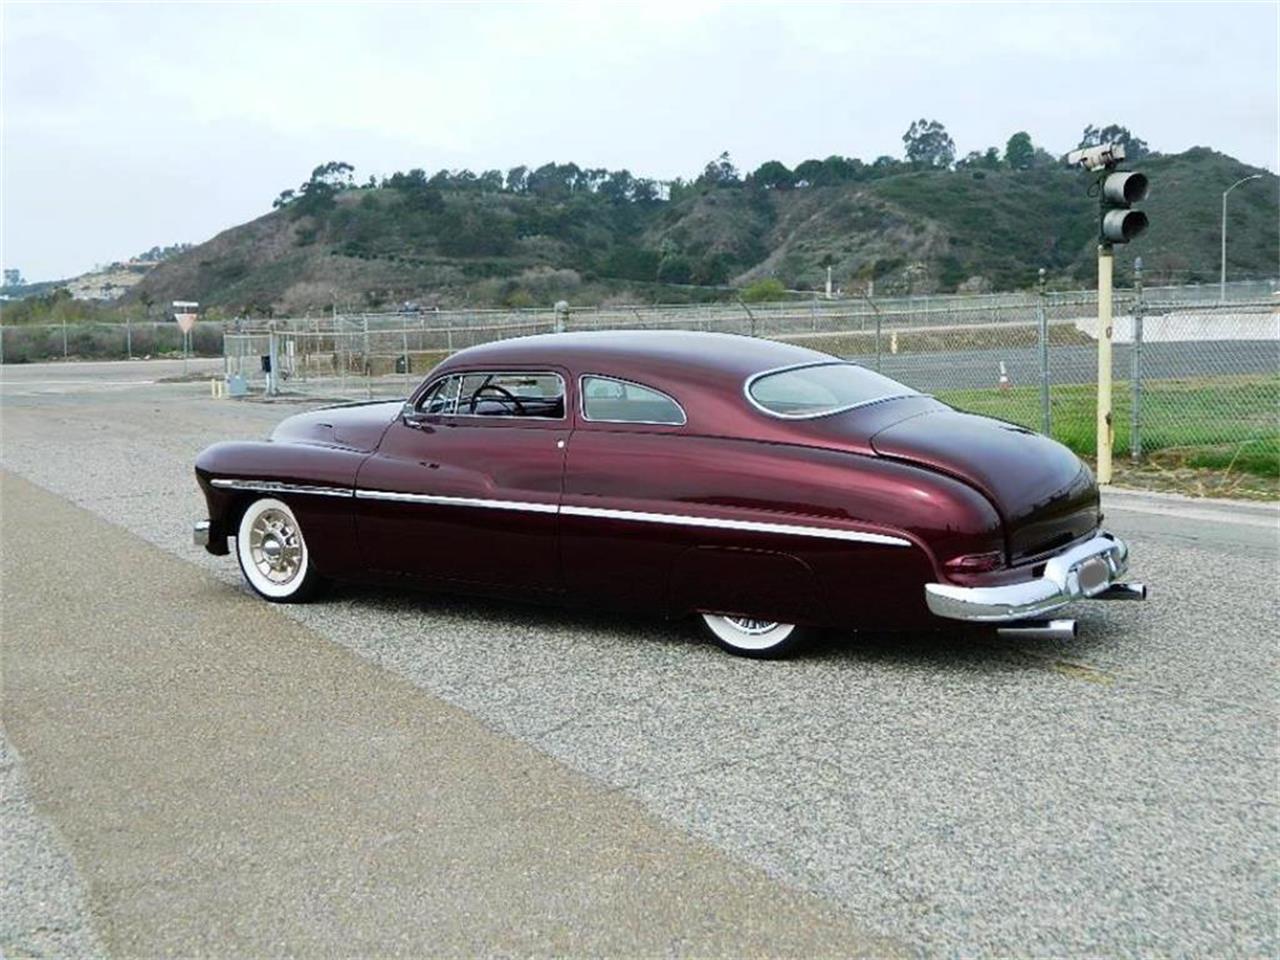 For Sale: 1950 Mercury Custom in orange, California.